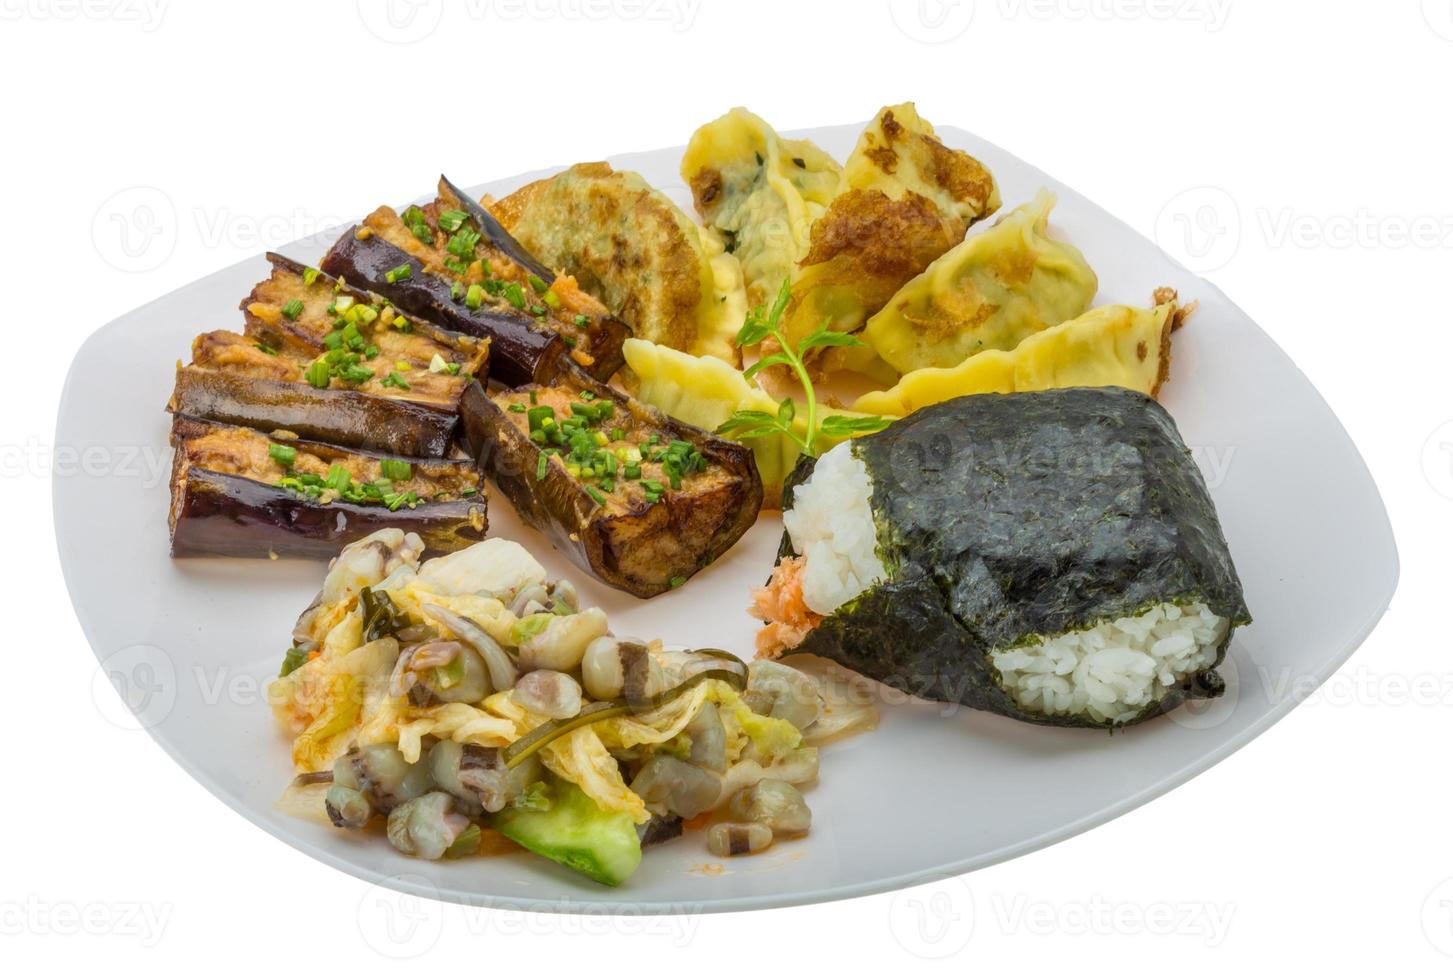 comida tradicional japonesa en el plato y fondo blanco foto